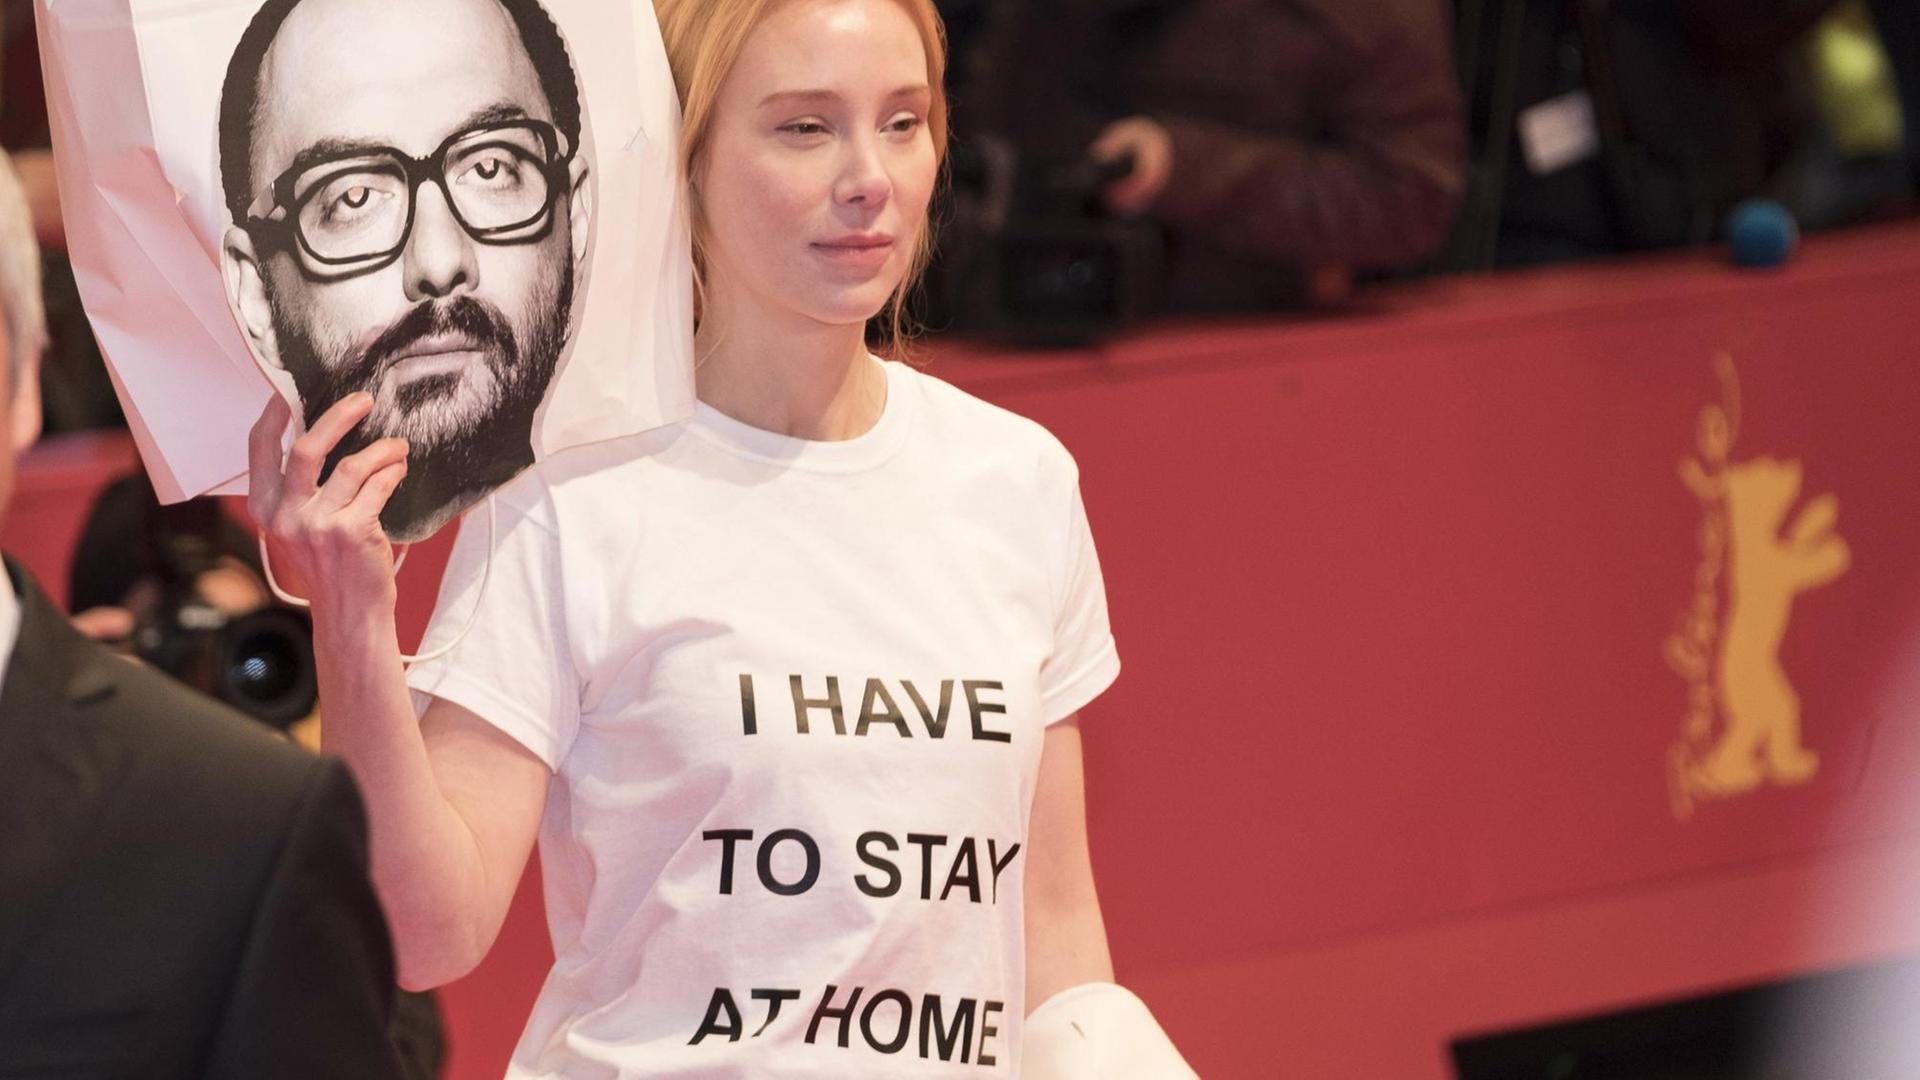 "I have to stay at home": Schauspielerin Franziska Petri bei der Berlinale mit einem Bild des Regisseurs Kirill Serebrennikows.